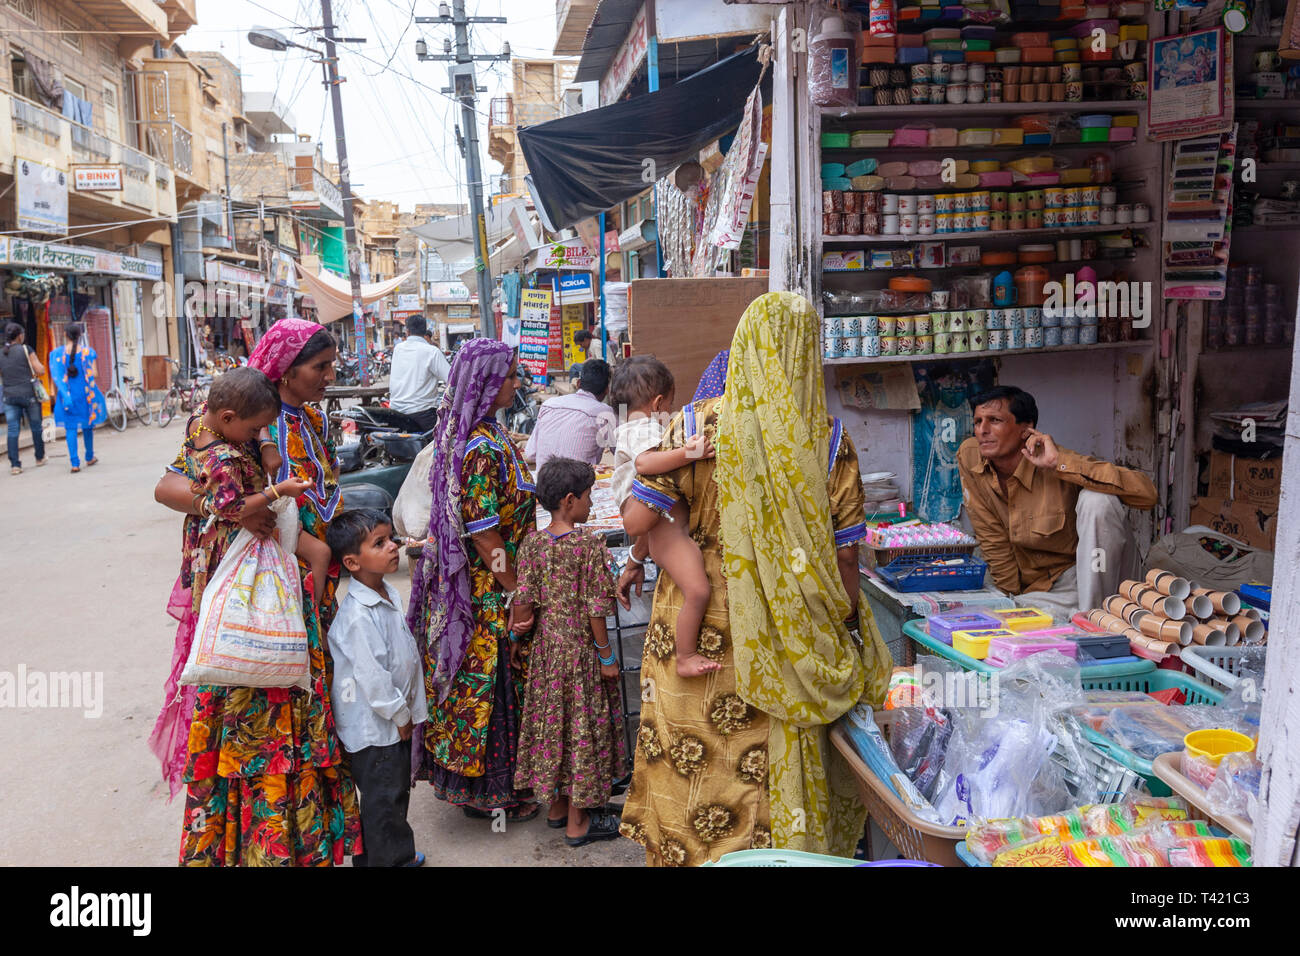 Gruppe der Rajasthani Frauen und Kinder in einer Straße shop in Jaisalmer, Rajasthan, Indien Stockfoto